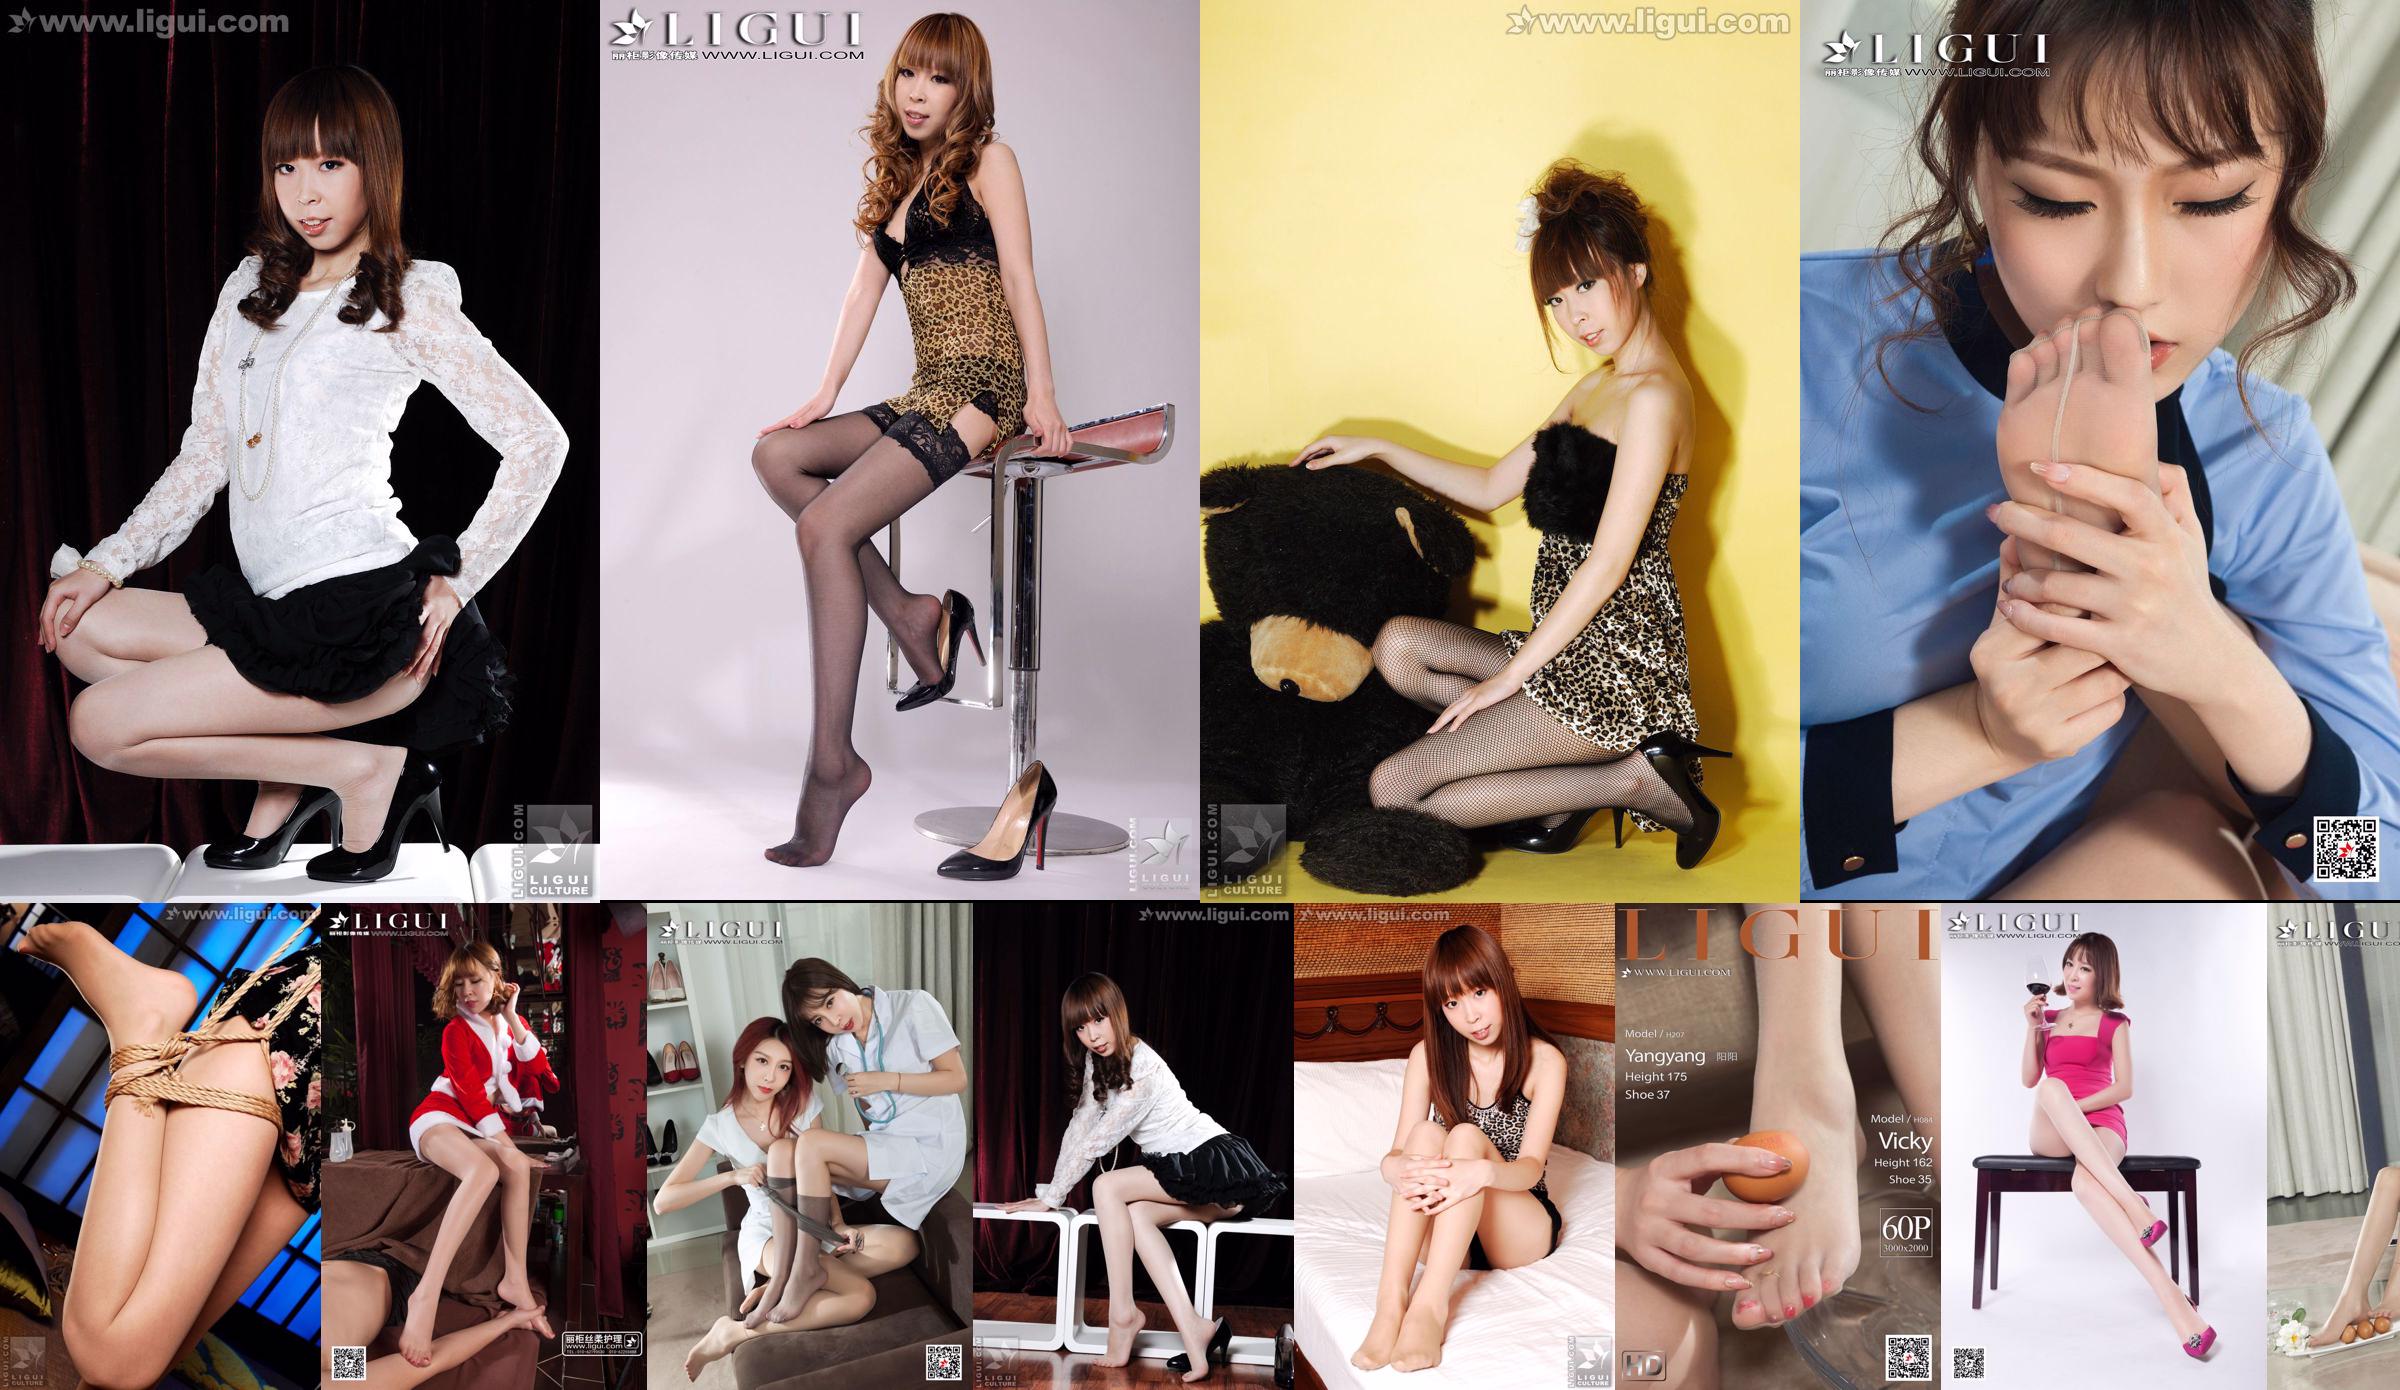 Model Vicky "The Temptation of White Collars and High Heels in Business Room" [丽 柜 LiGui] Foto van mooie benen en voeten No.68f0cd Pagina 4